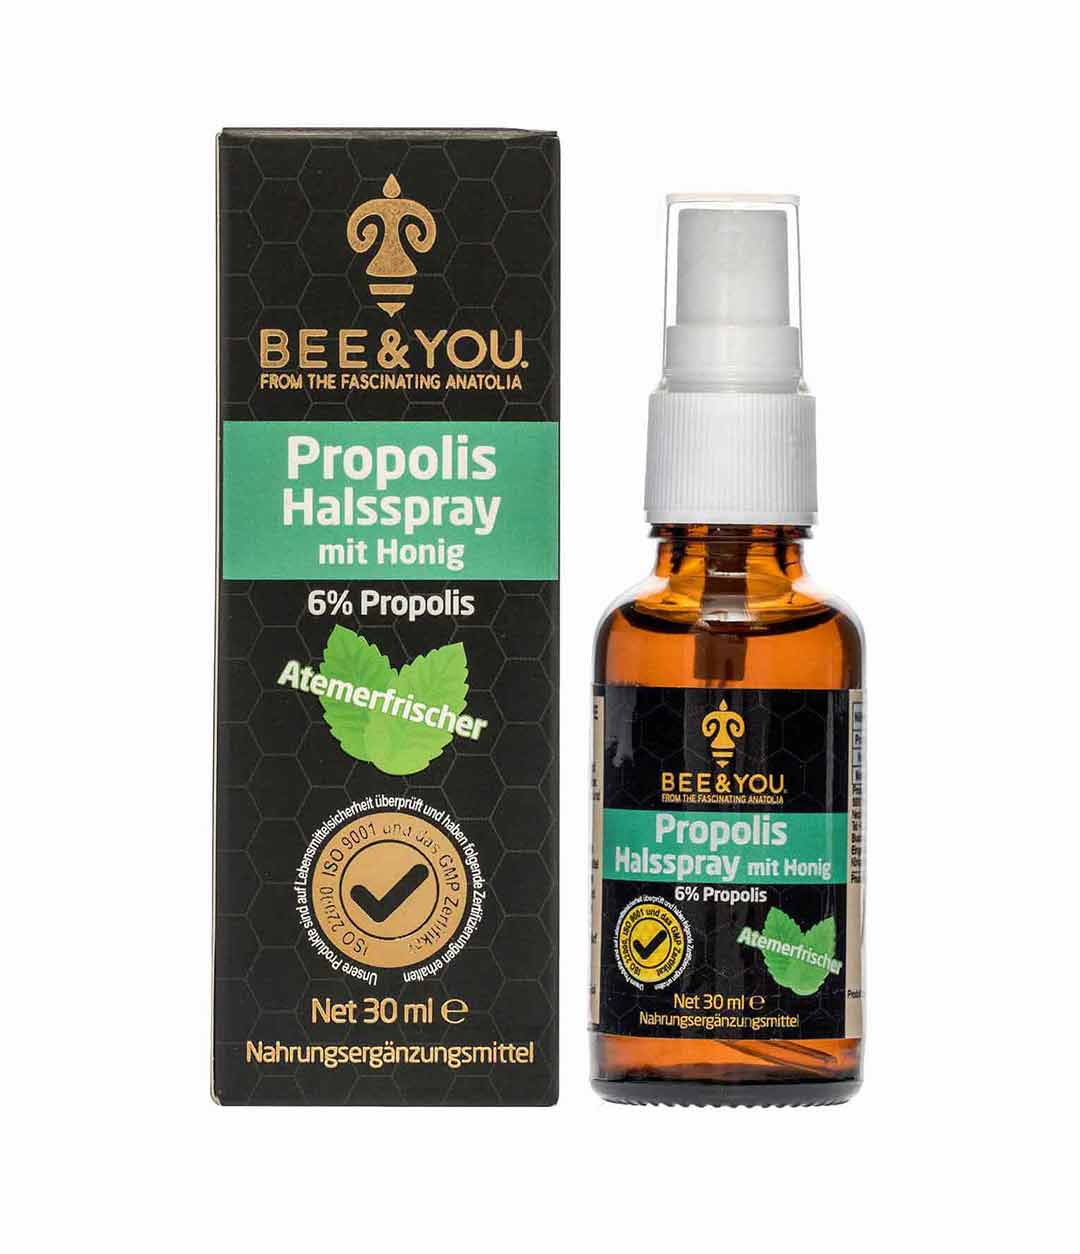 BEE&YOU Propolis Halsspray